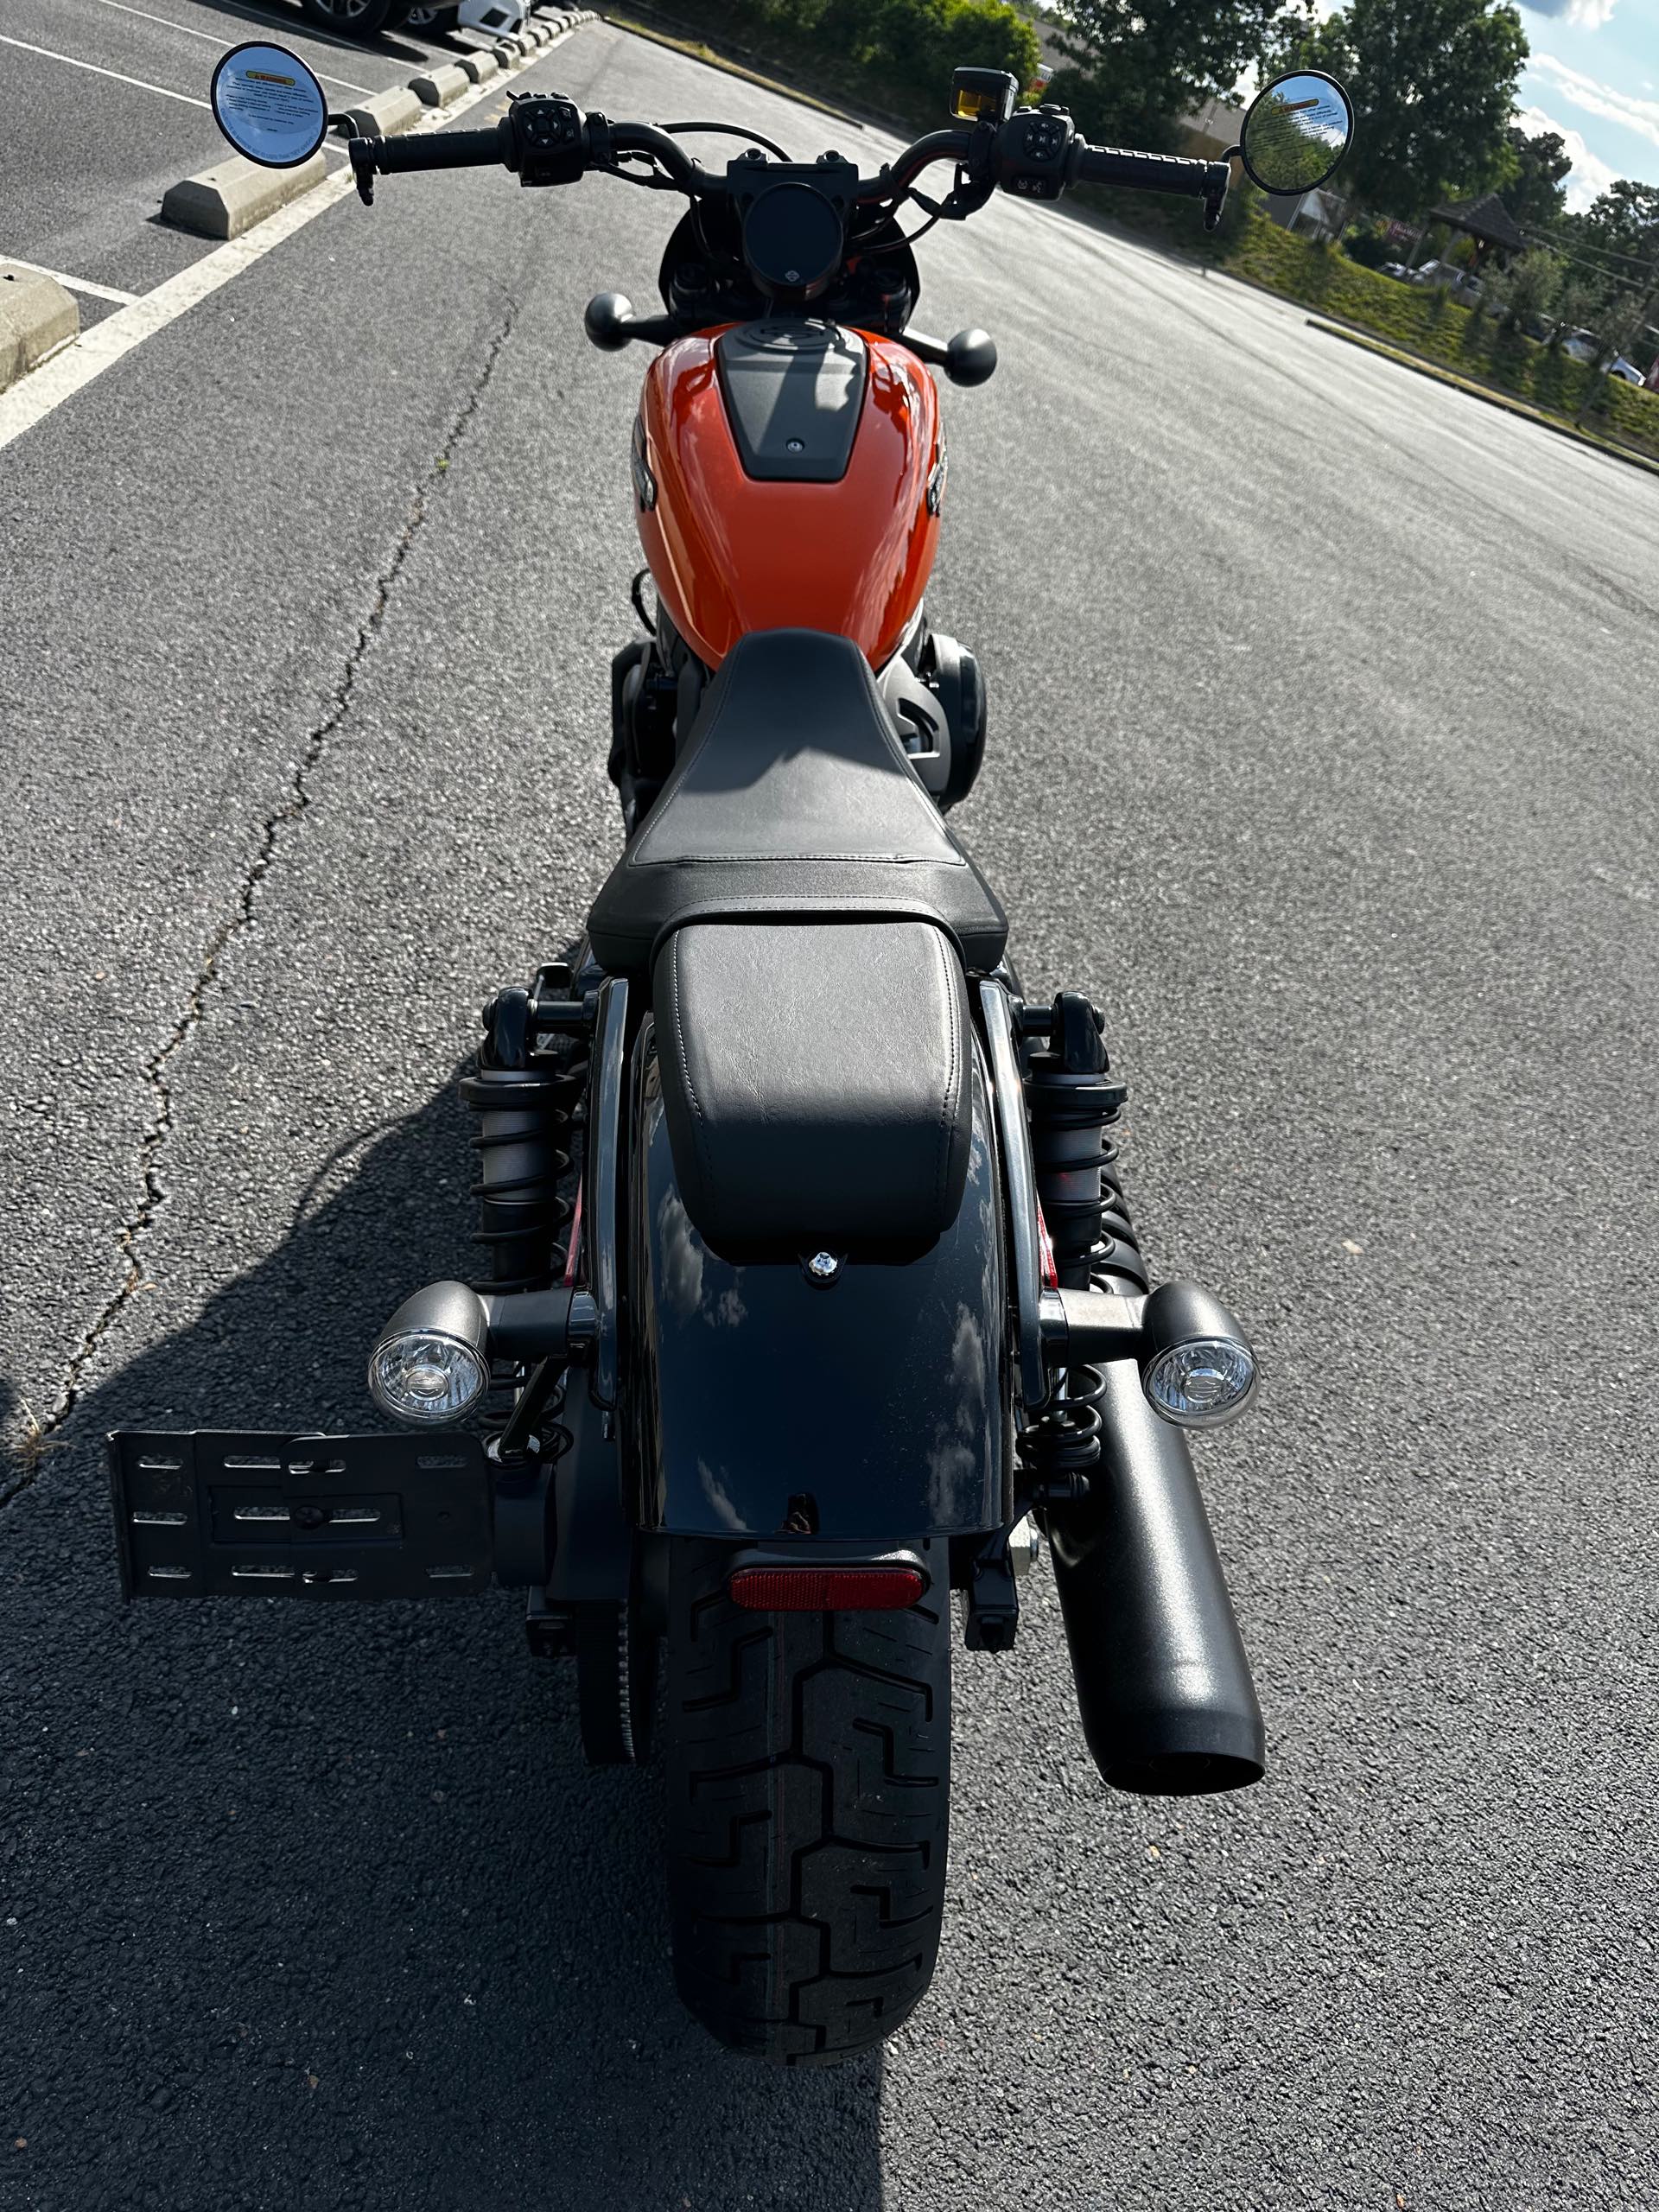 2024 Harley-Davidson Sportster Nightster Special at Steel Horse Harley-Davidson®